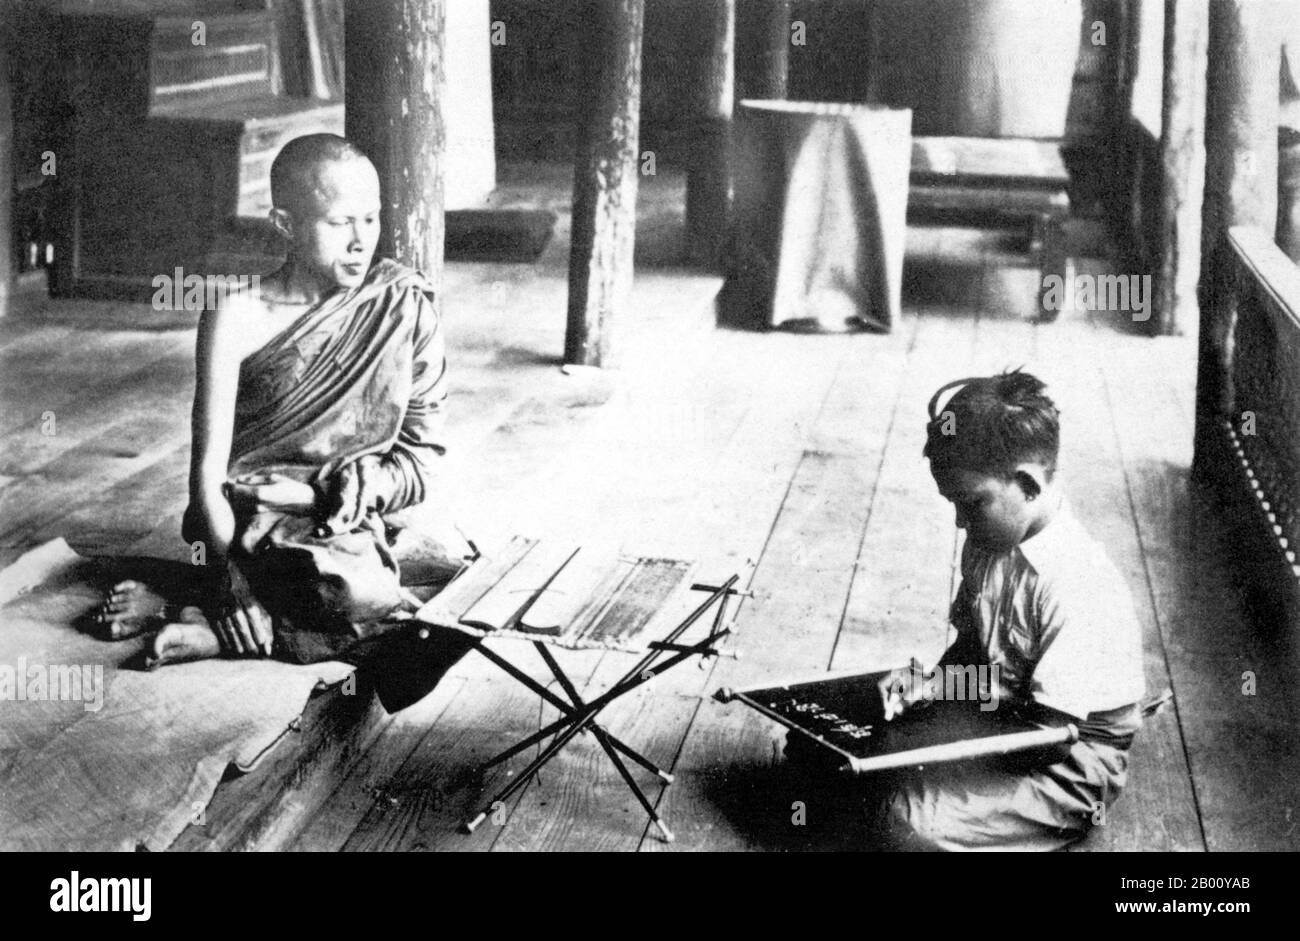 Thailandia: Una fotografia del 1900 di un monaco buddista che insegna un bambino a Nakhon Phanom in Isarn, nel nord-est del Siam. Nakhon Phanom, un tempo il centro dell'antico regno di Sri Kotrabun, si trova adiacente al fiume Mekong, 735 km a nord-est di Bangkok. L'area fu a lungo abitata da etnie del Laos e appartenne al regno LAN Xang anche dopo che venne sotto il controllo di Ayutthaya. Inizialmente era conosciuto come 'i Kotrabun', e durante i tempi del re Rama i come 'Maruka Nakhon'. Foto Stock